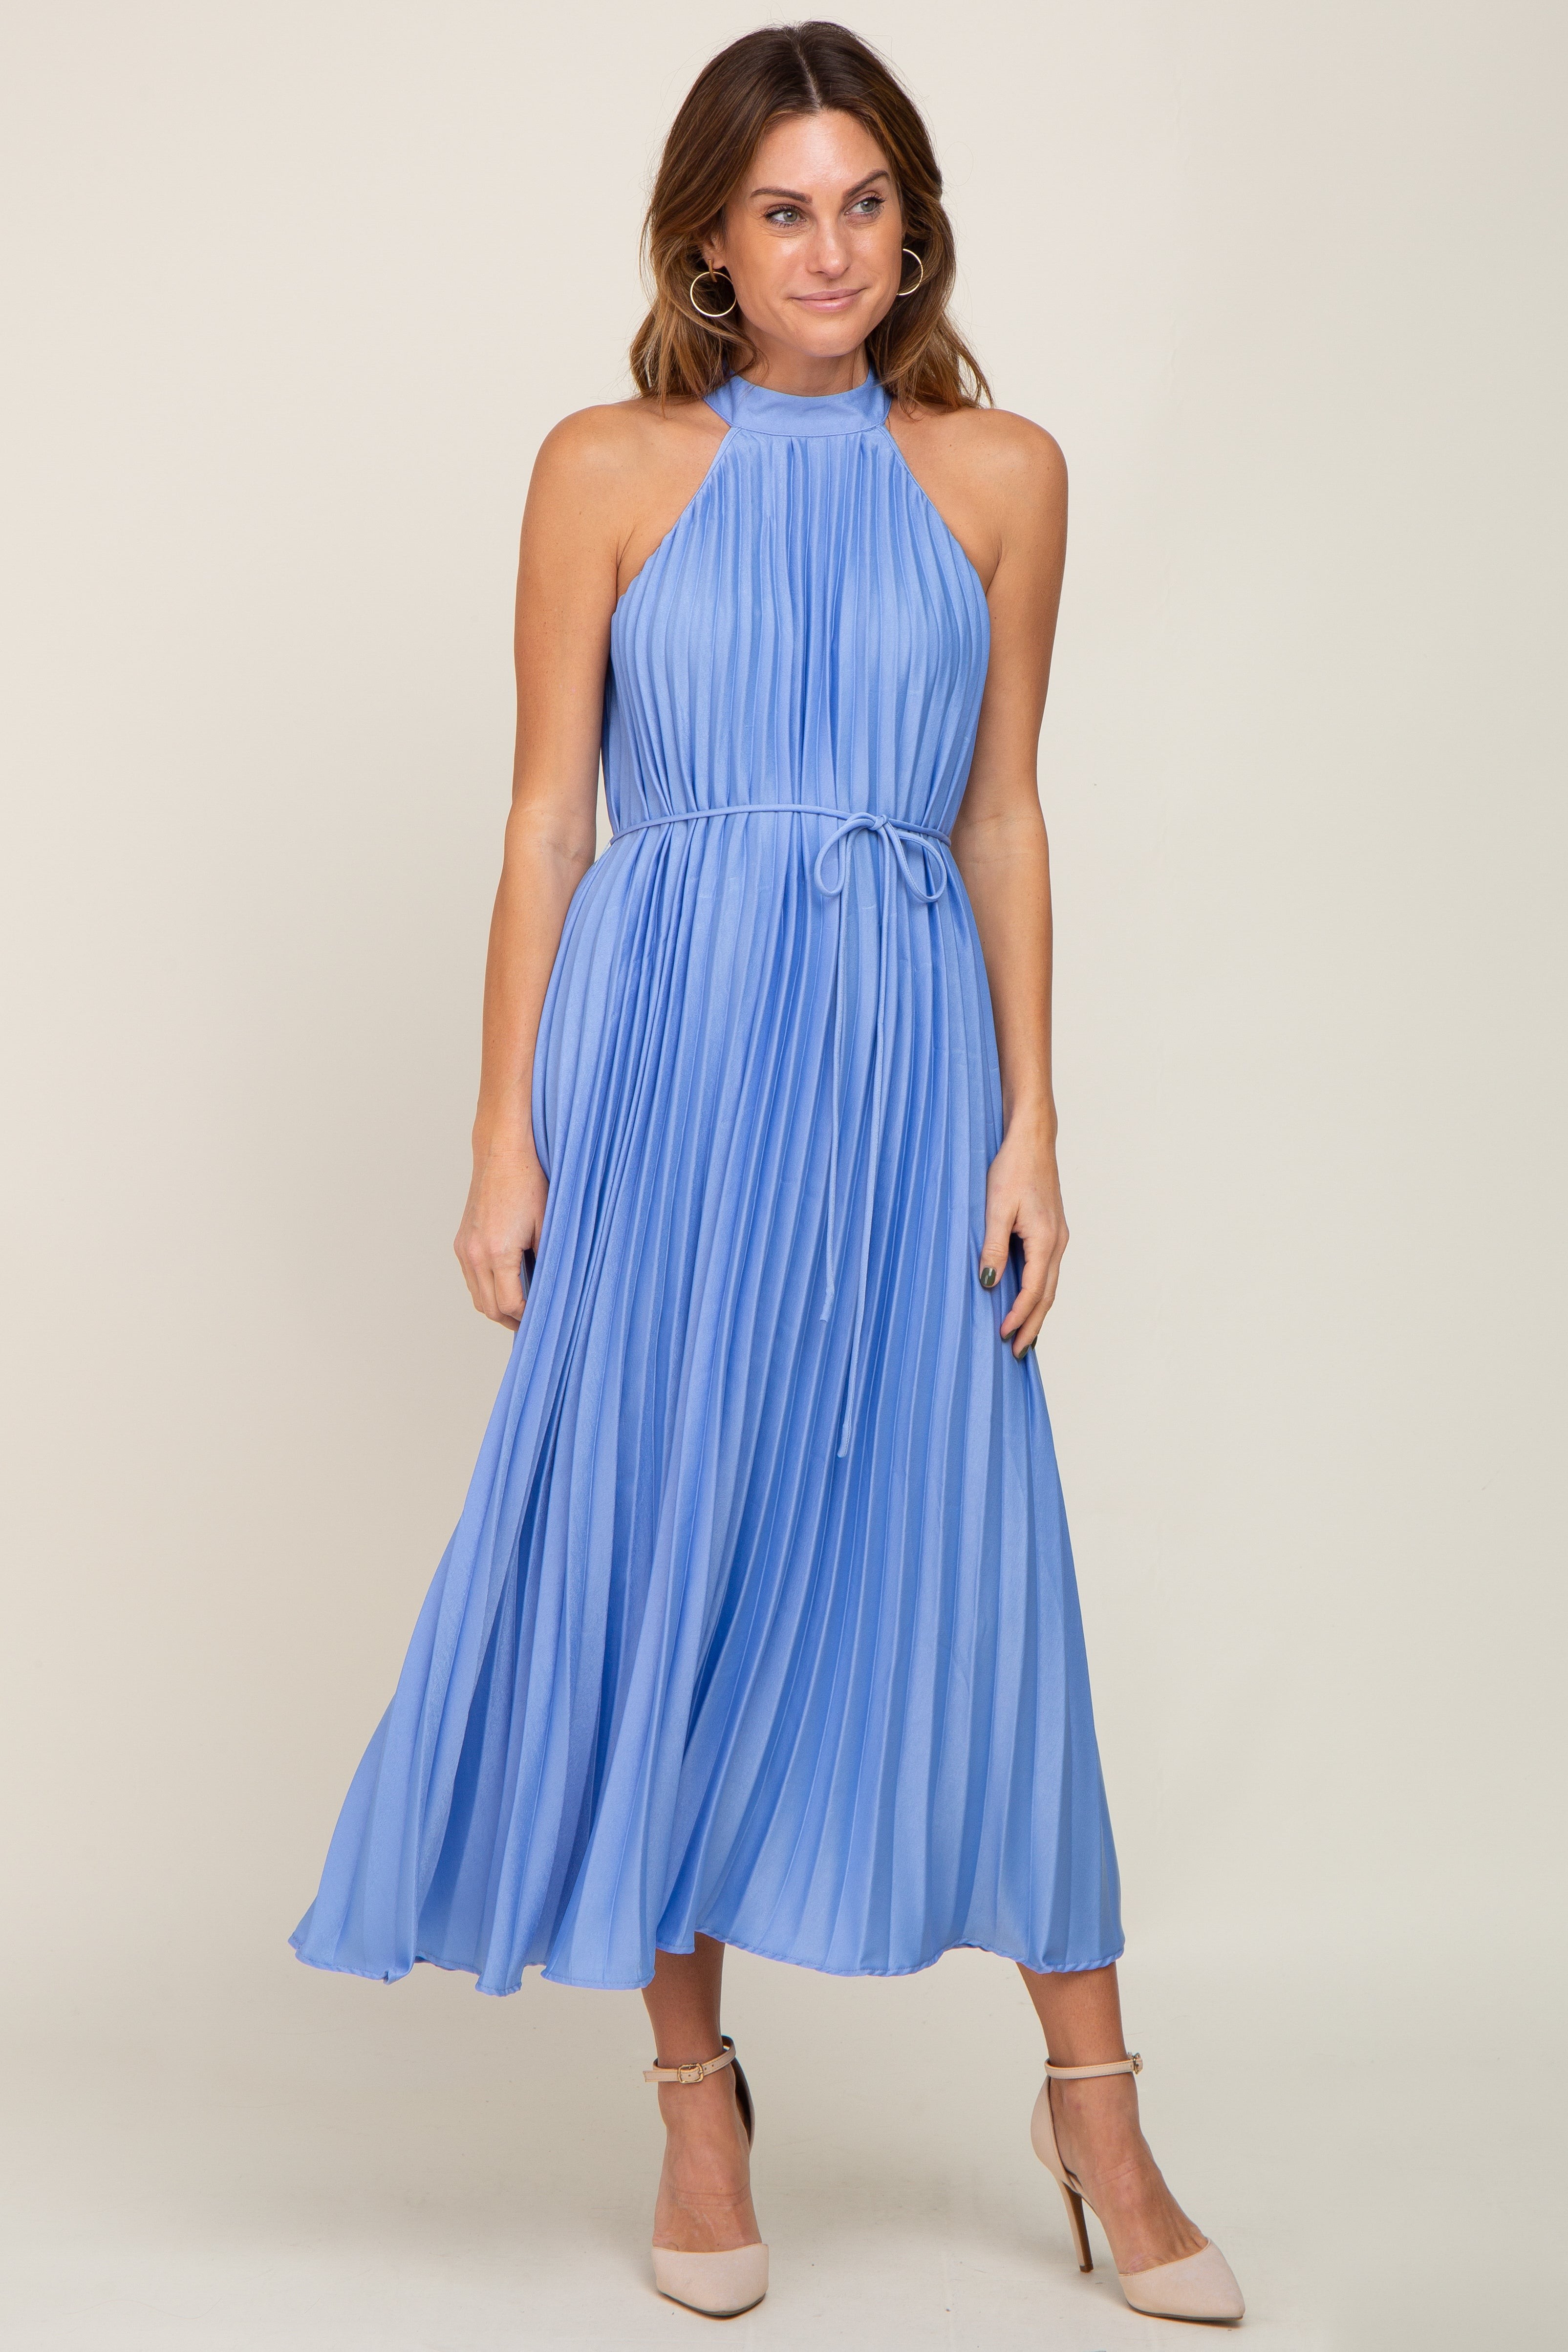 Carlyn Midi Dress - Linen Look Detachable Straps in Blue